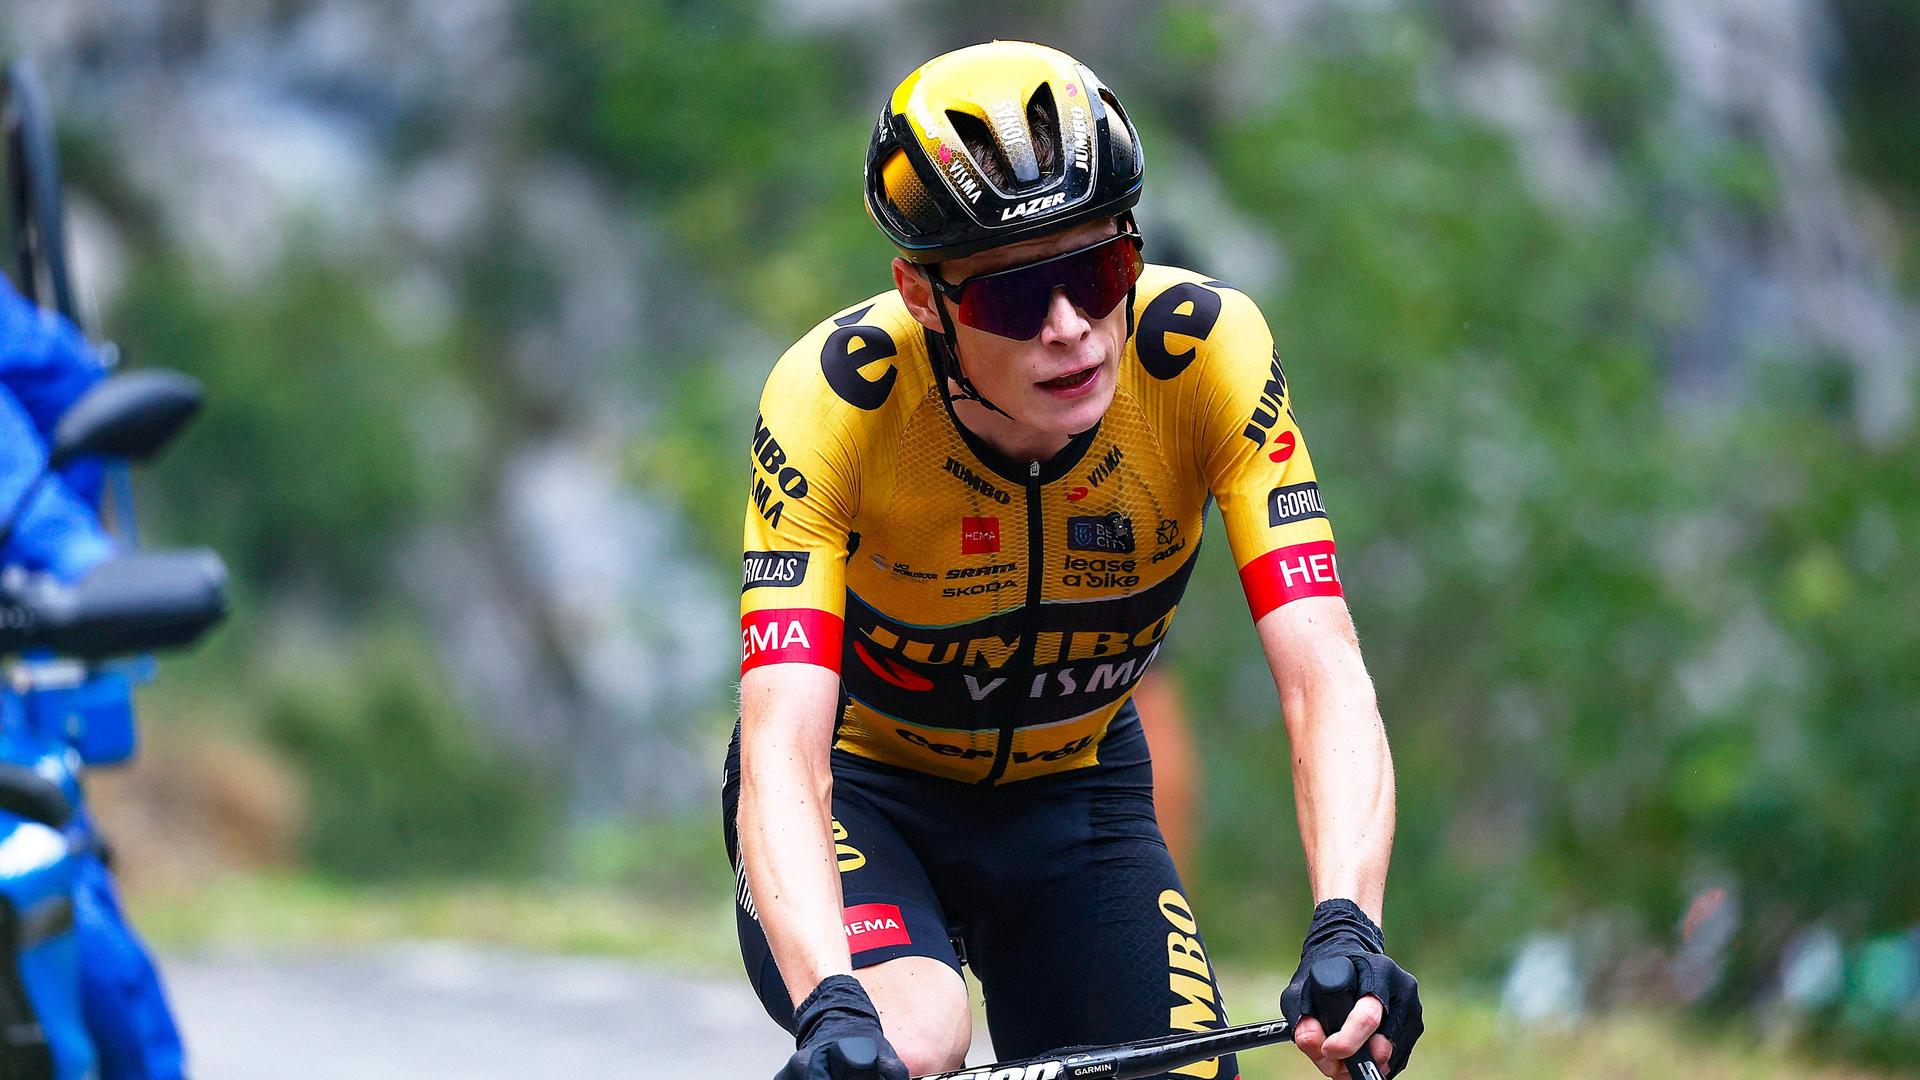 Das Foto zeigt den dänischen Radrennfahrer Jonas Vingegaard bei der 16. Etappe der Vuelta. Er trägt ein gelbes Trikot.